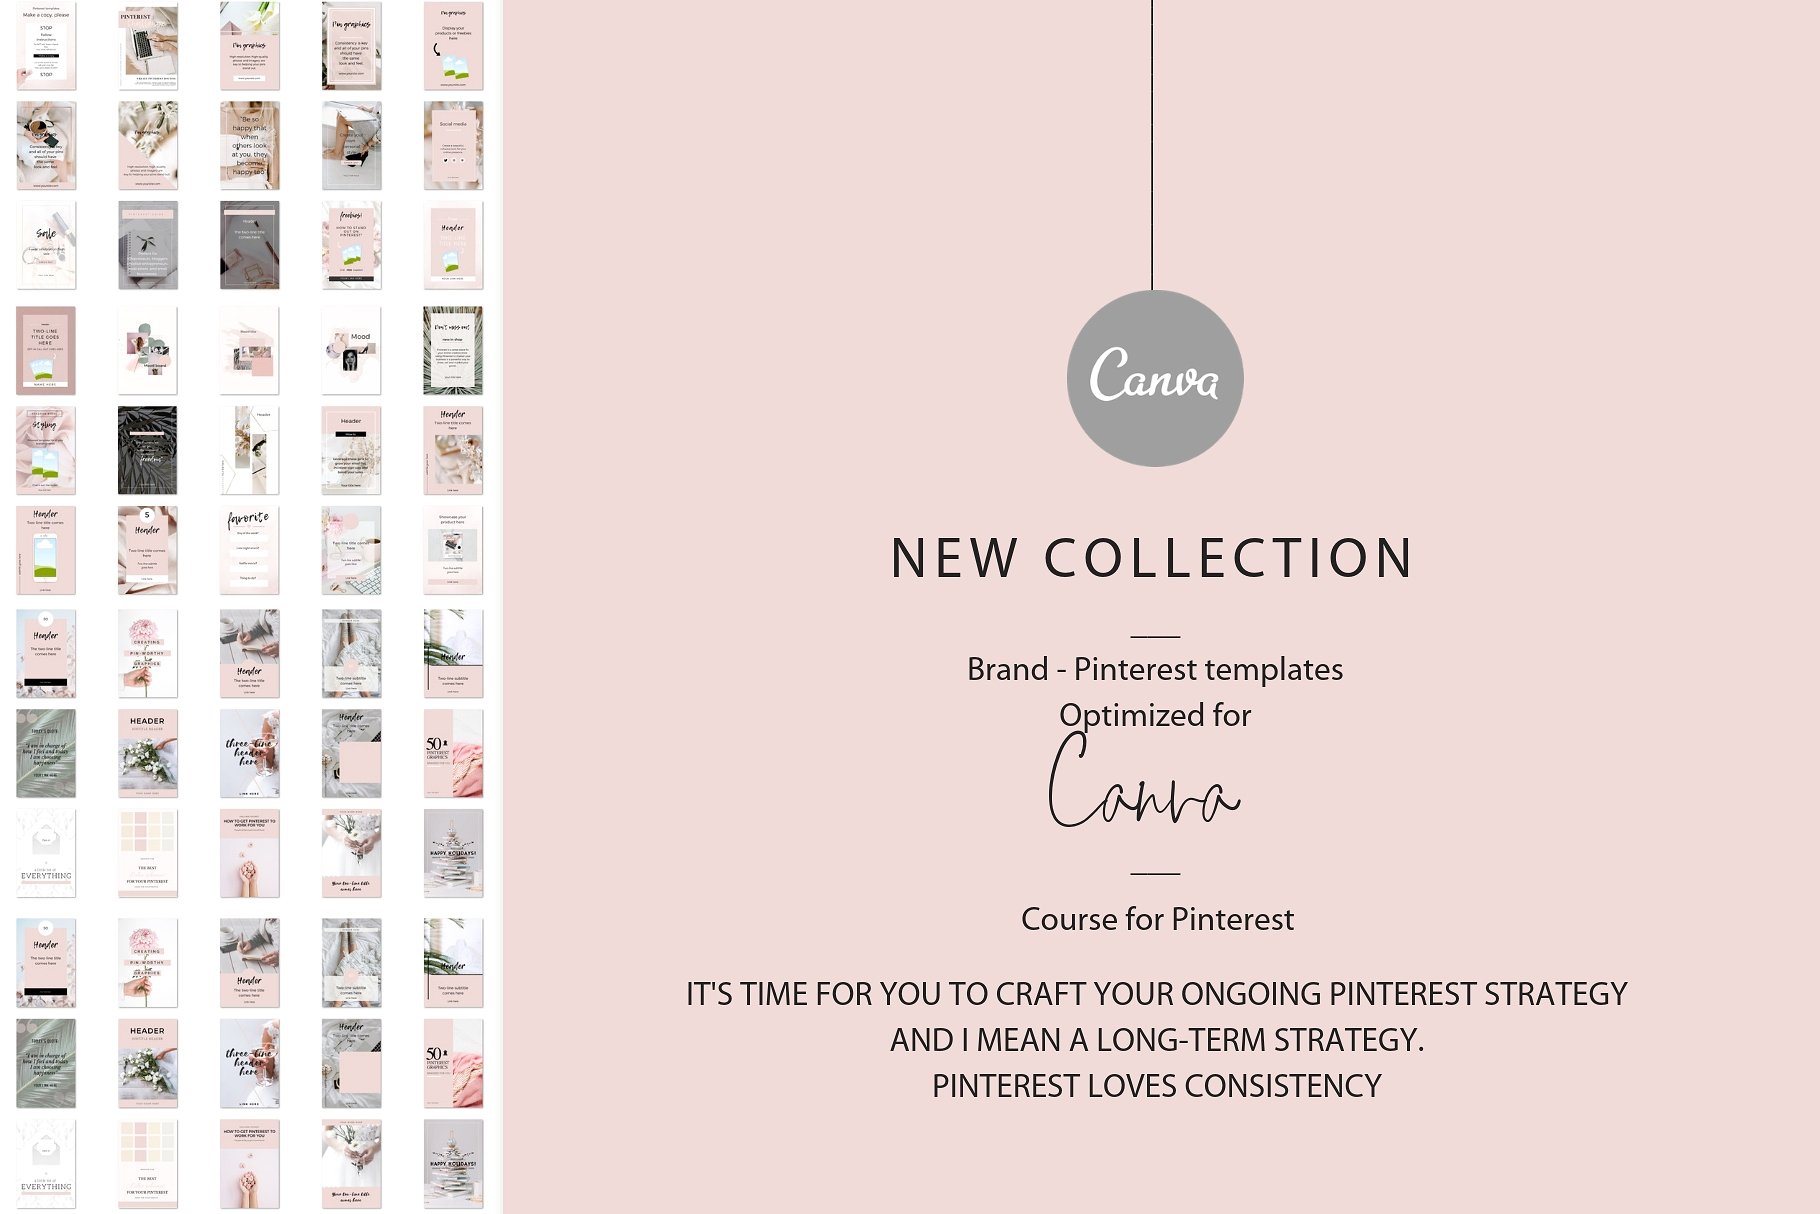 高品质的品牌社交媒体宣传Canva模板第一素材精选 Branded pins + Pinterest guide [jpg,pdf]插图(1)